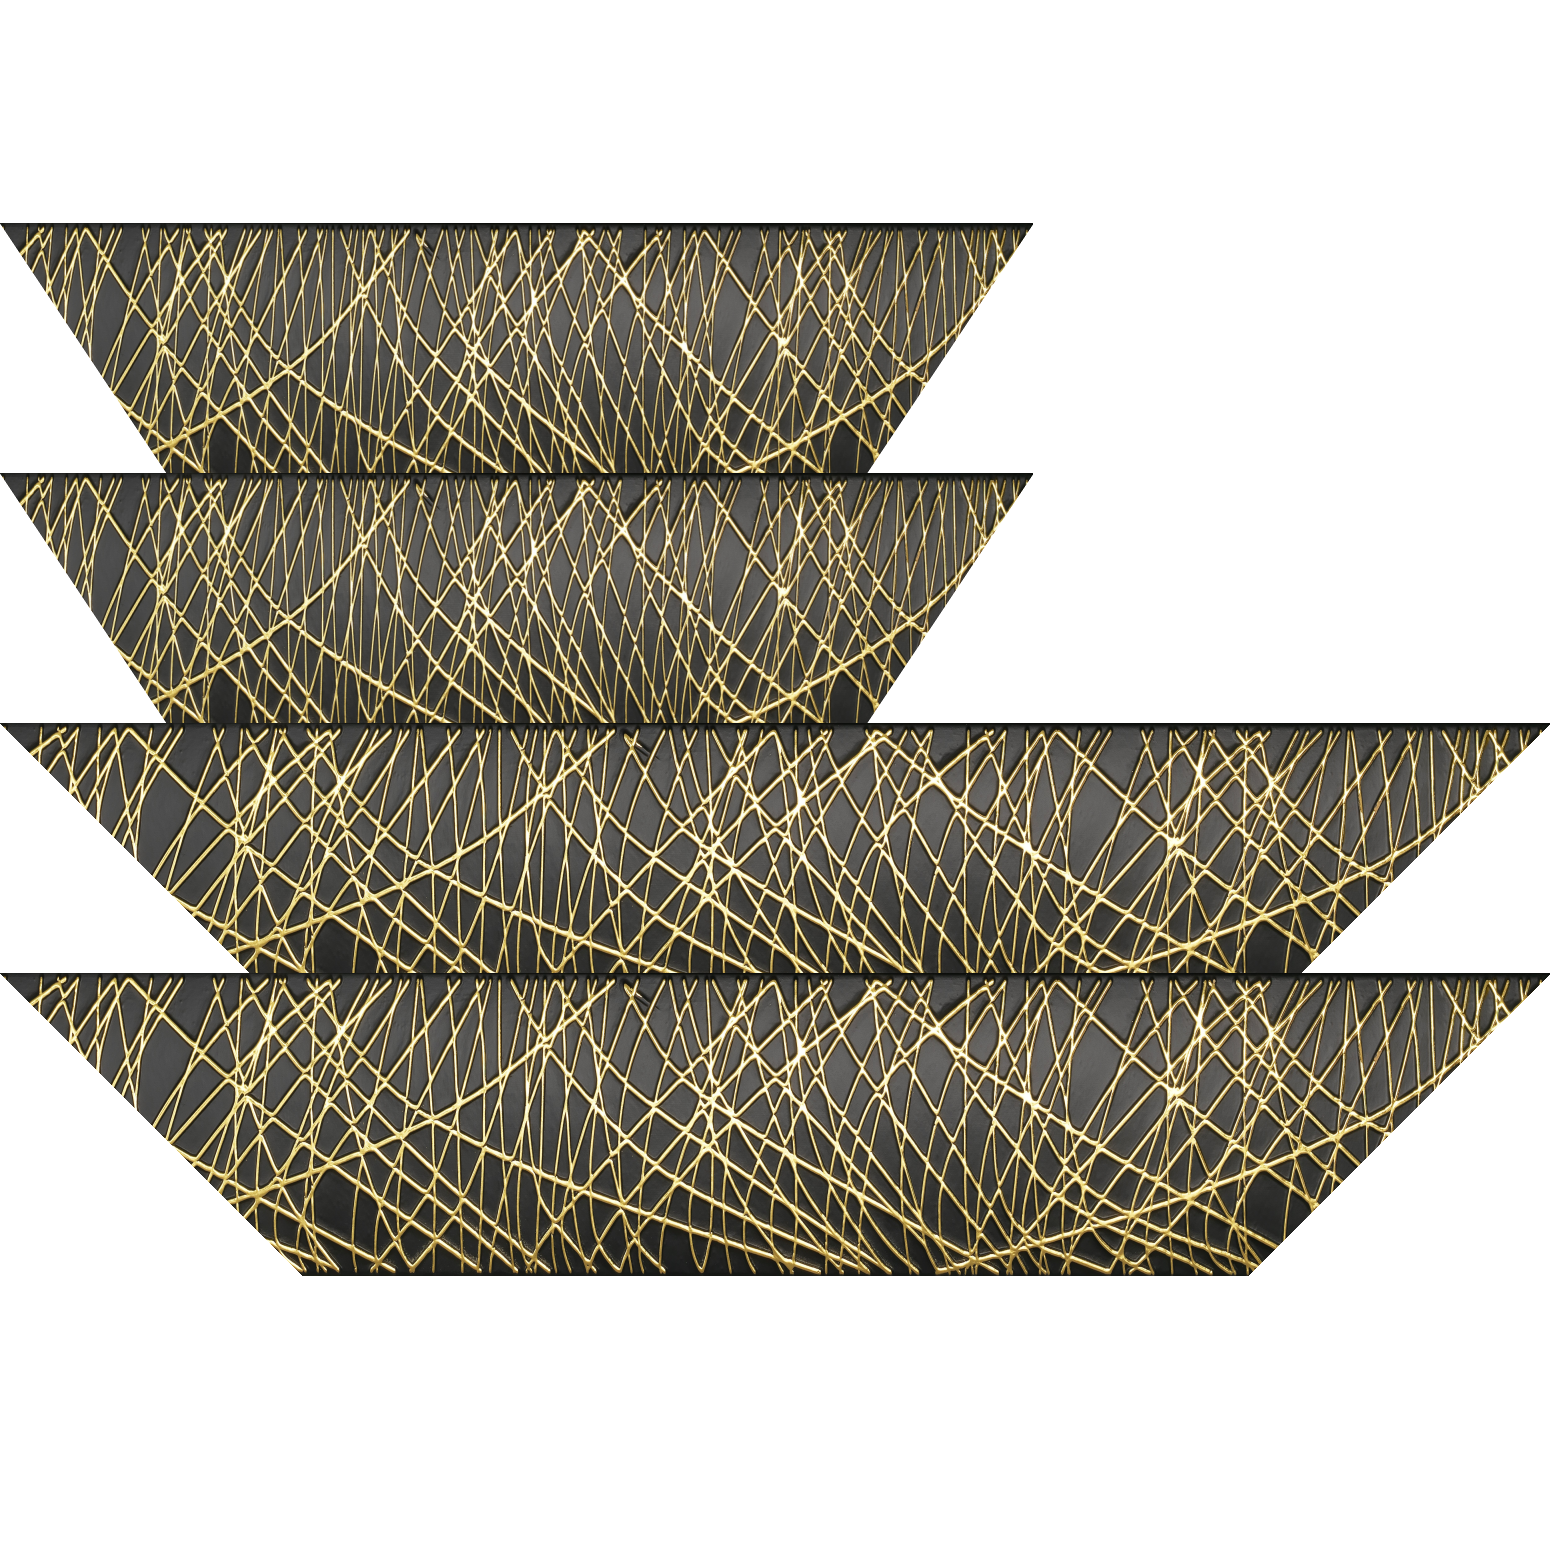 Baguette bois profil arrondi méplat largeur 9.9cm couleur noir satiné trait or en relief - 59.4x84.1